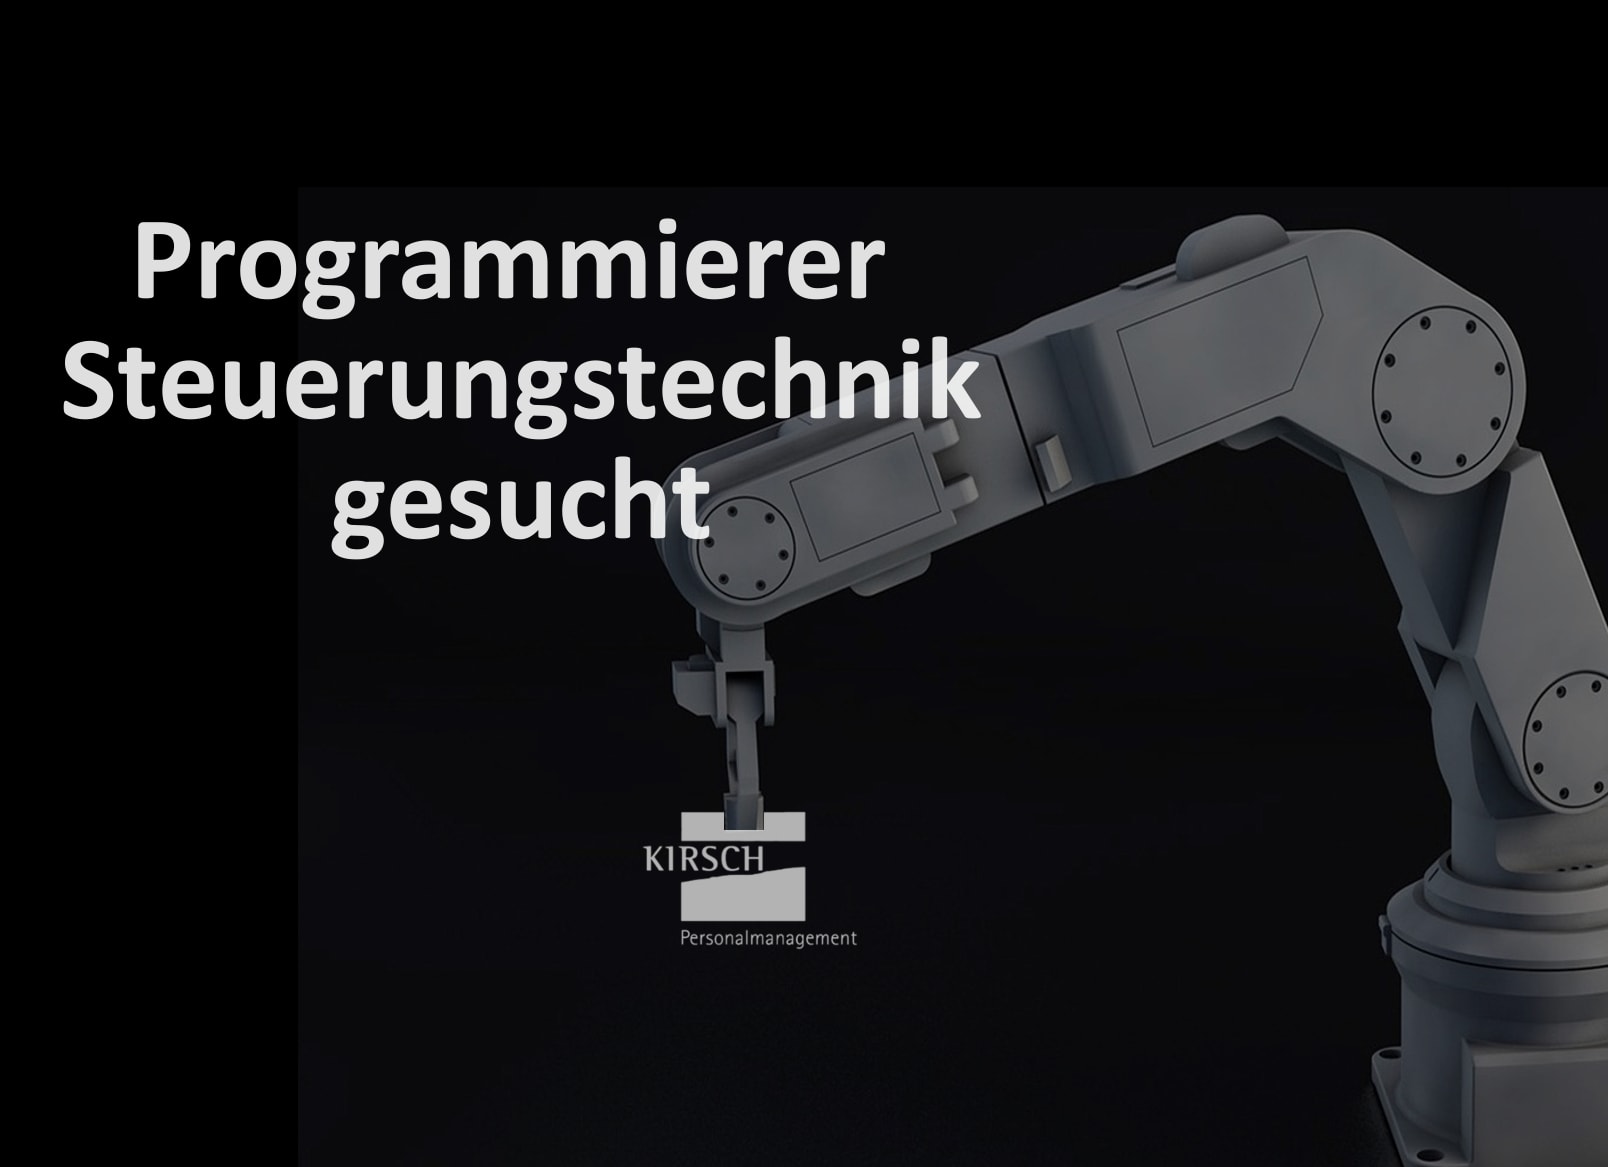 Programmierer Steuerungstechnik - Kirsch GmbH Personalmanagement